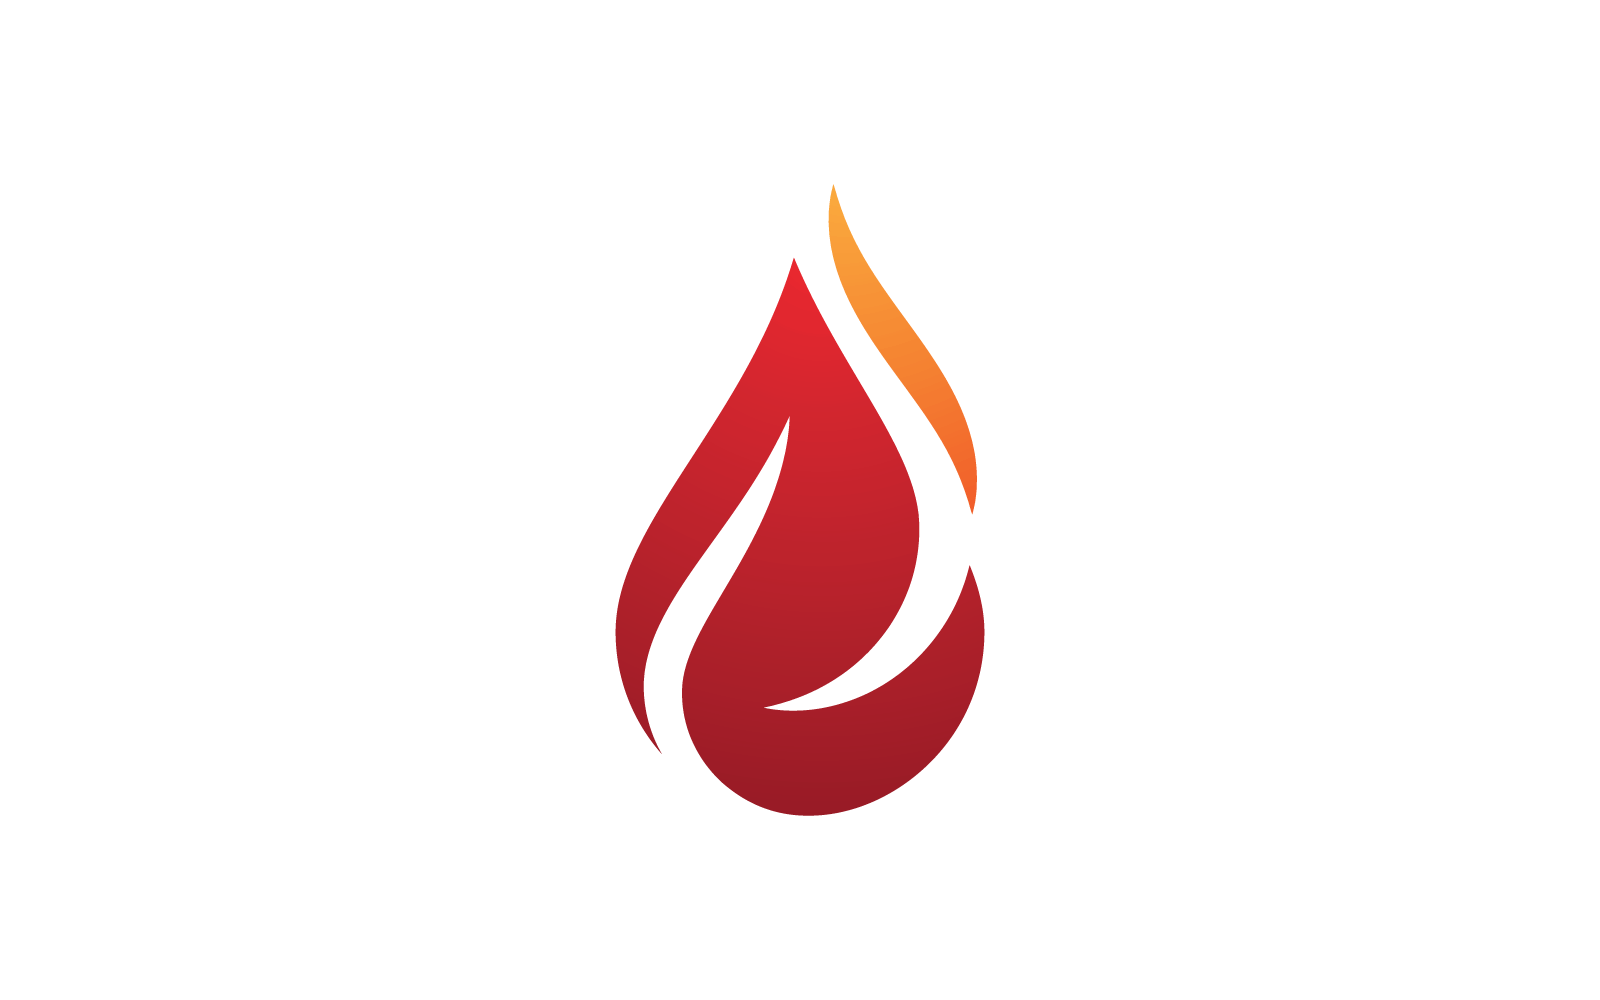 Fire flame Logo vector, Oil, gas and energy logo vector concept